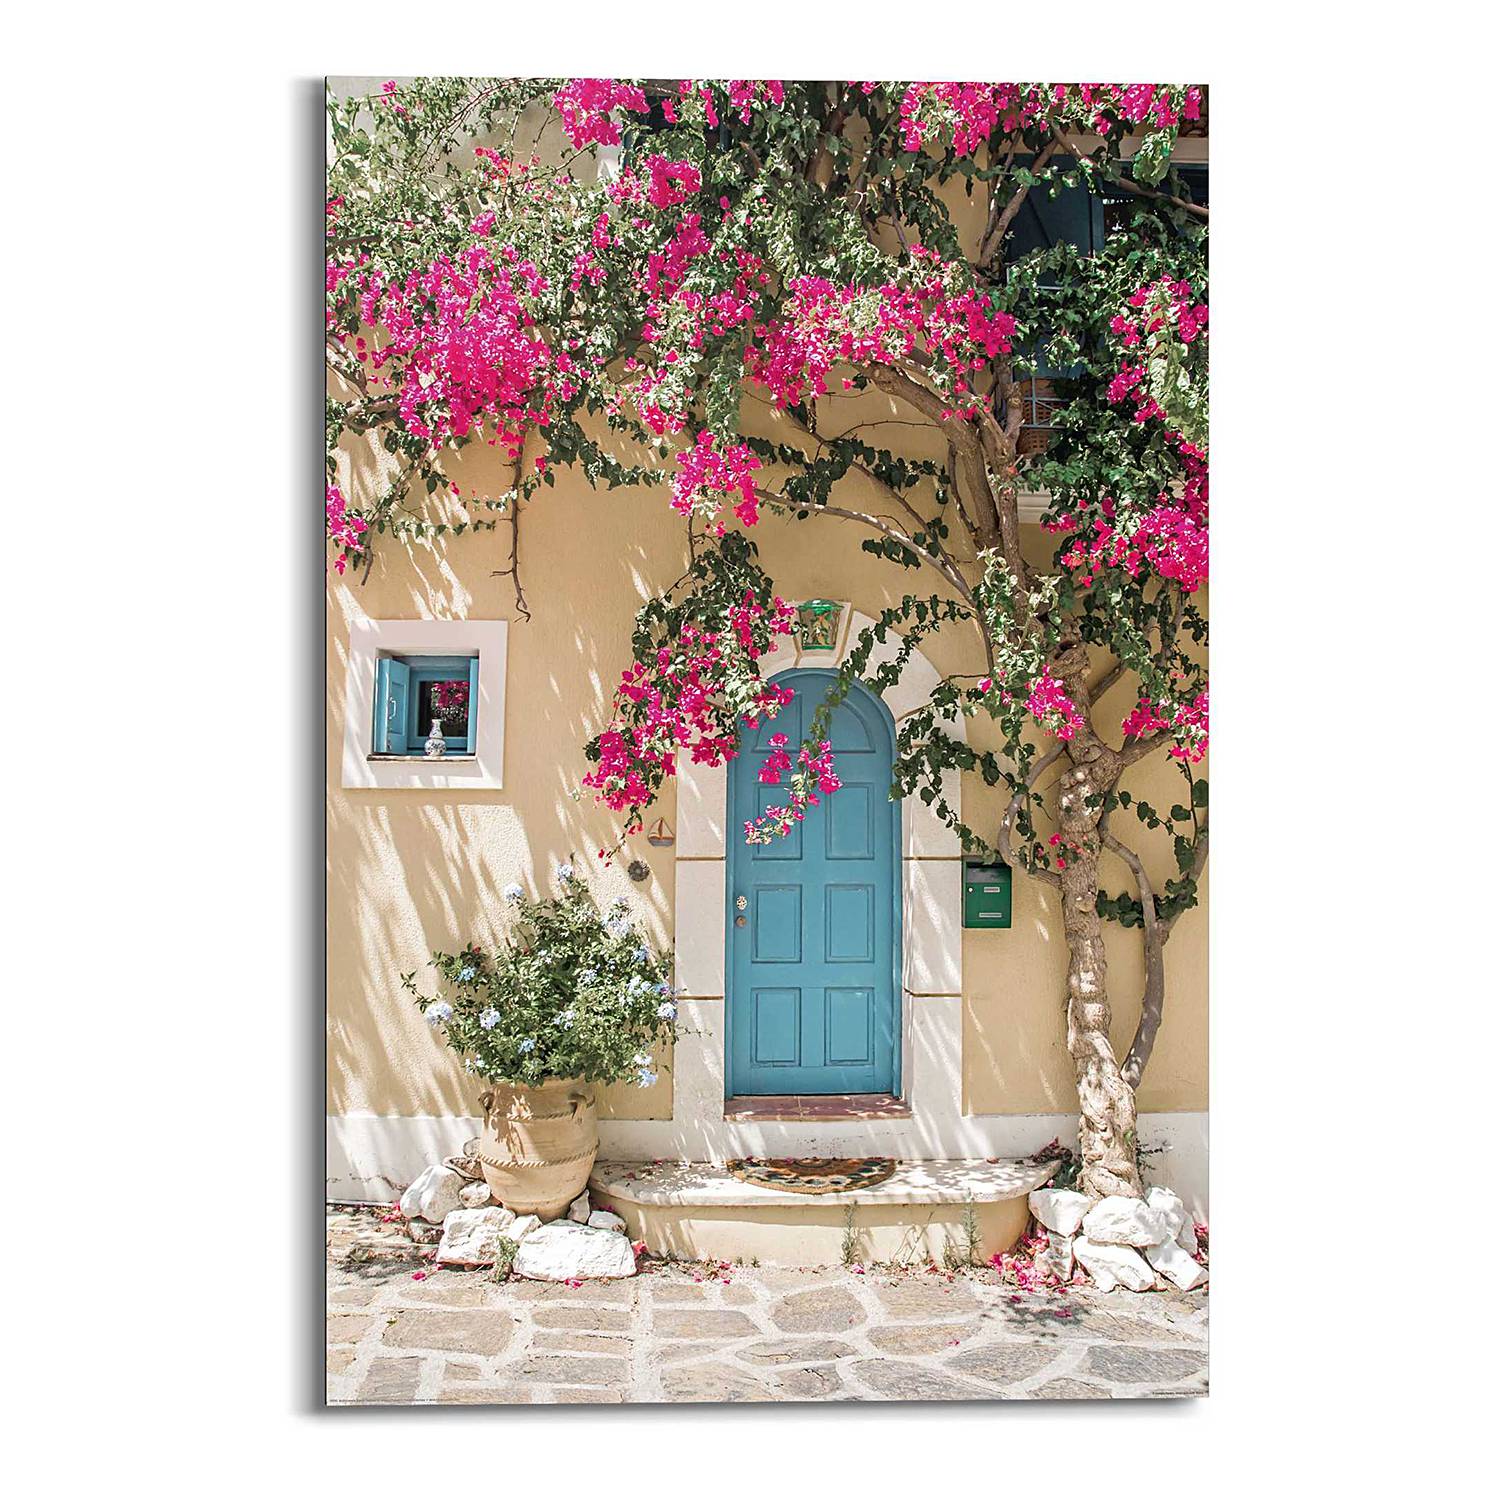 Wandbild Griechenland kaufen | home24